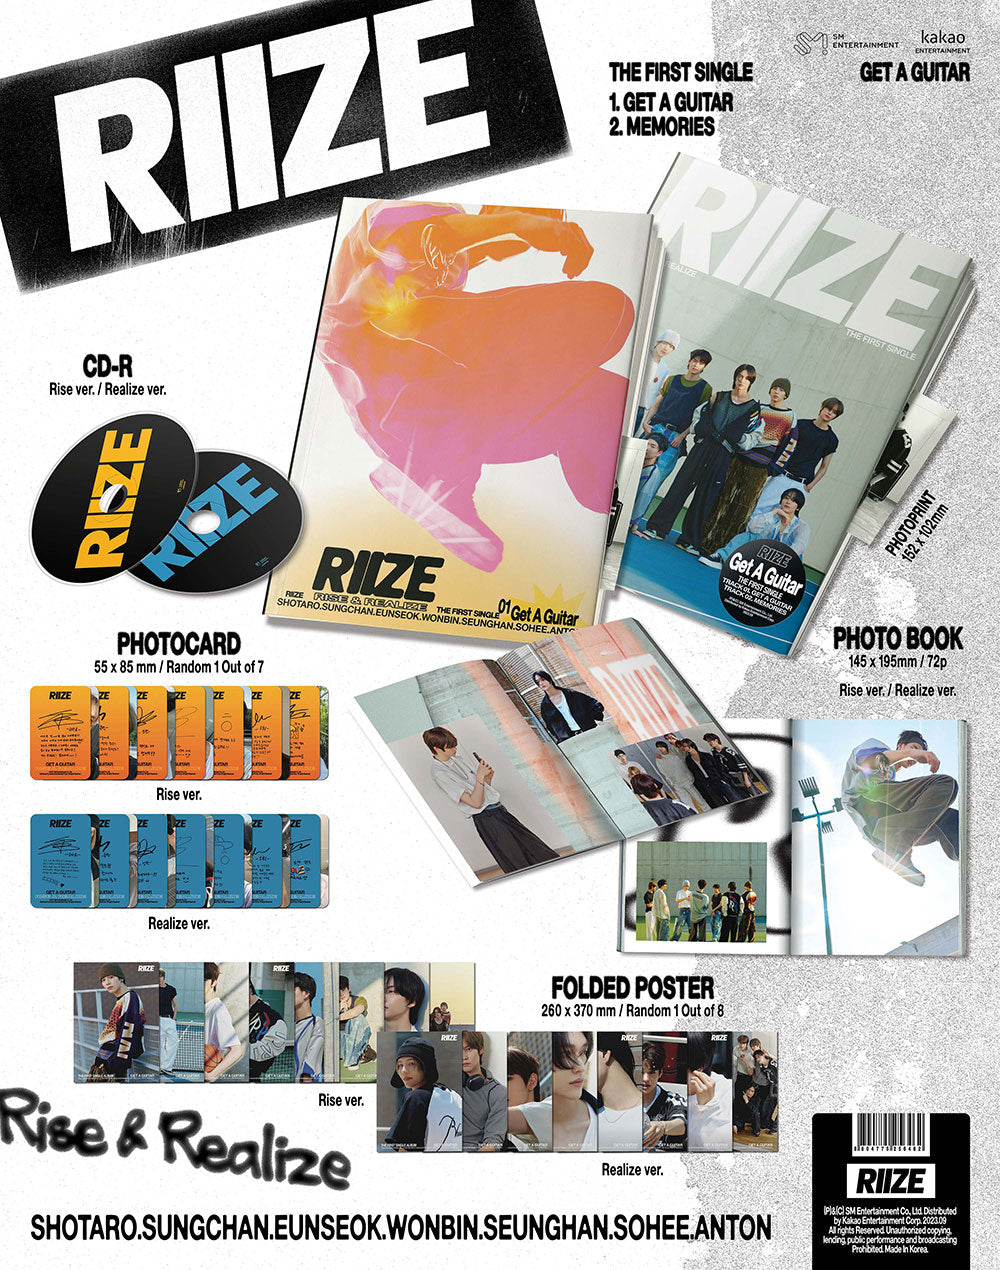 RIIZE - Get A Guitar (1st Single Album)